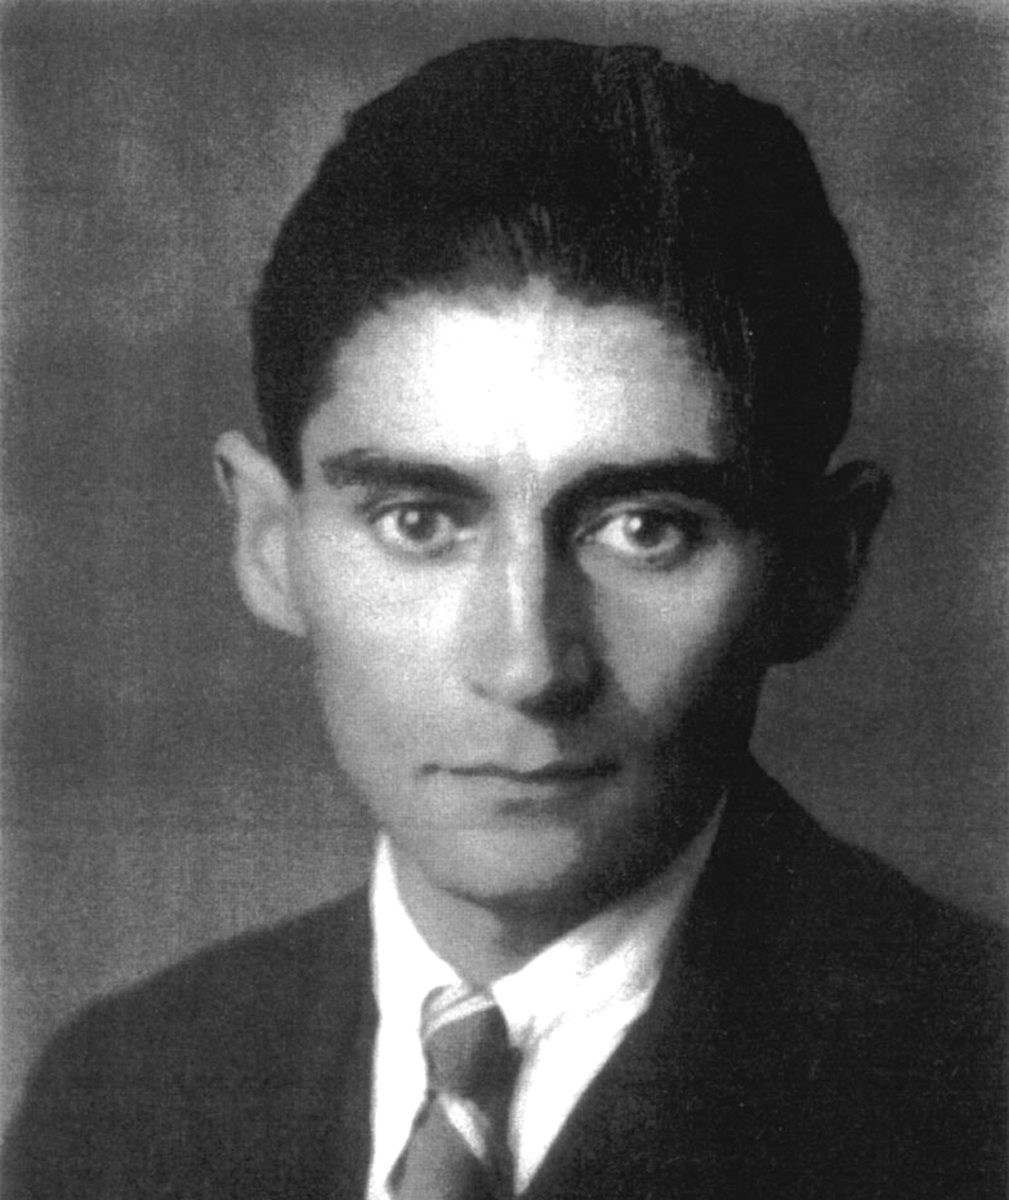 Interviste impossibili: oggi ci è venuto a trovare il fantasma di Franz Kafka